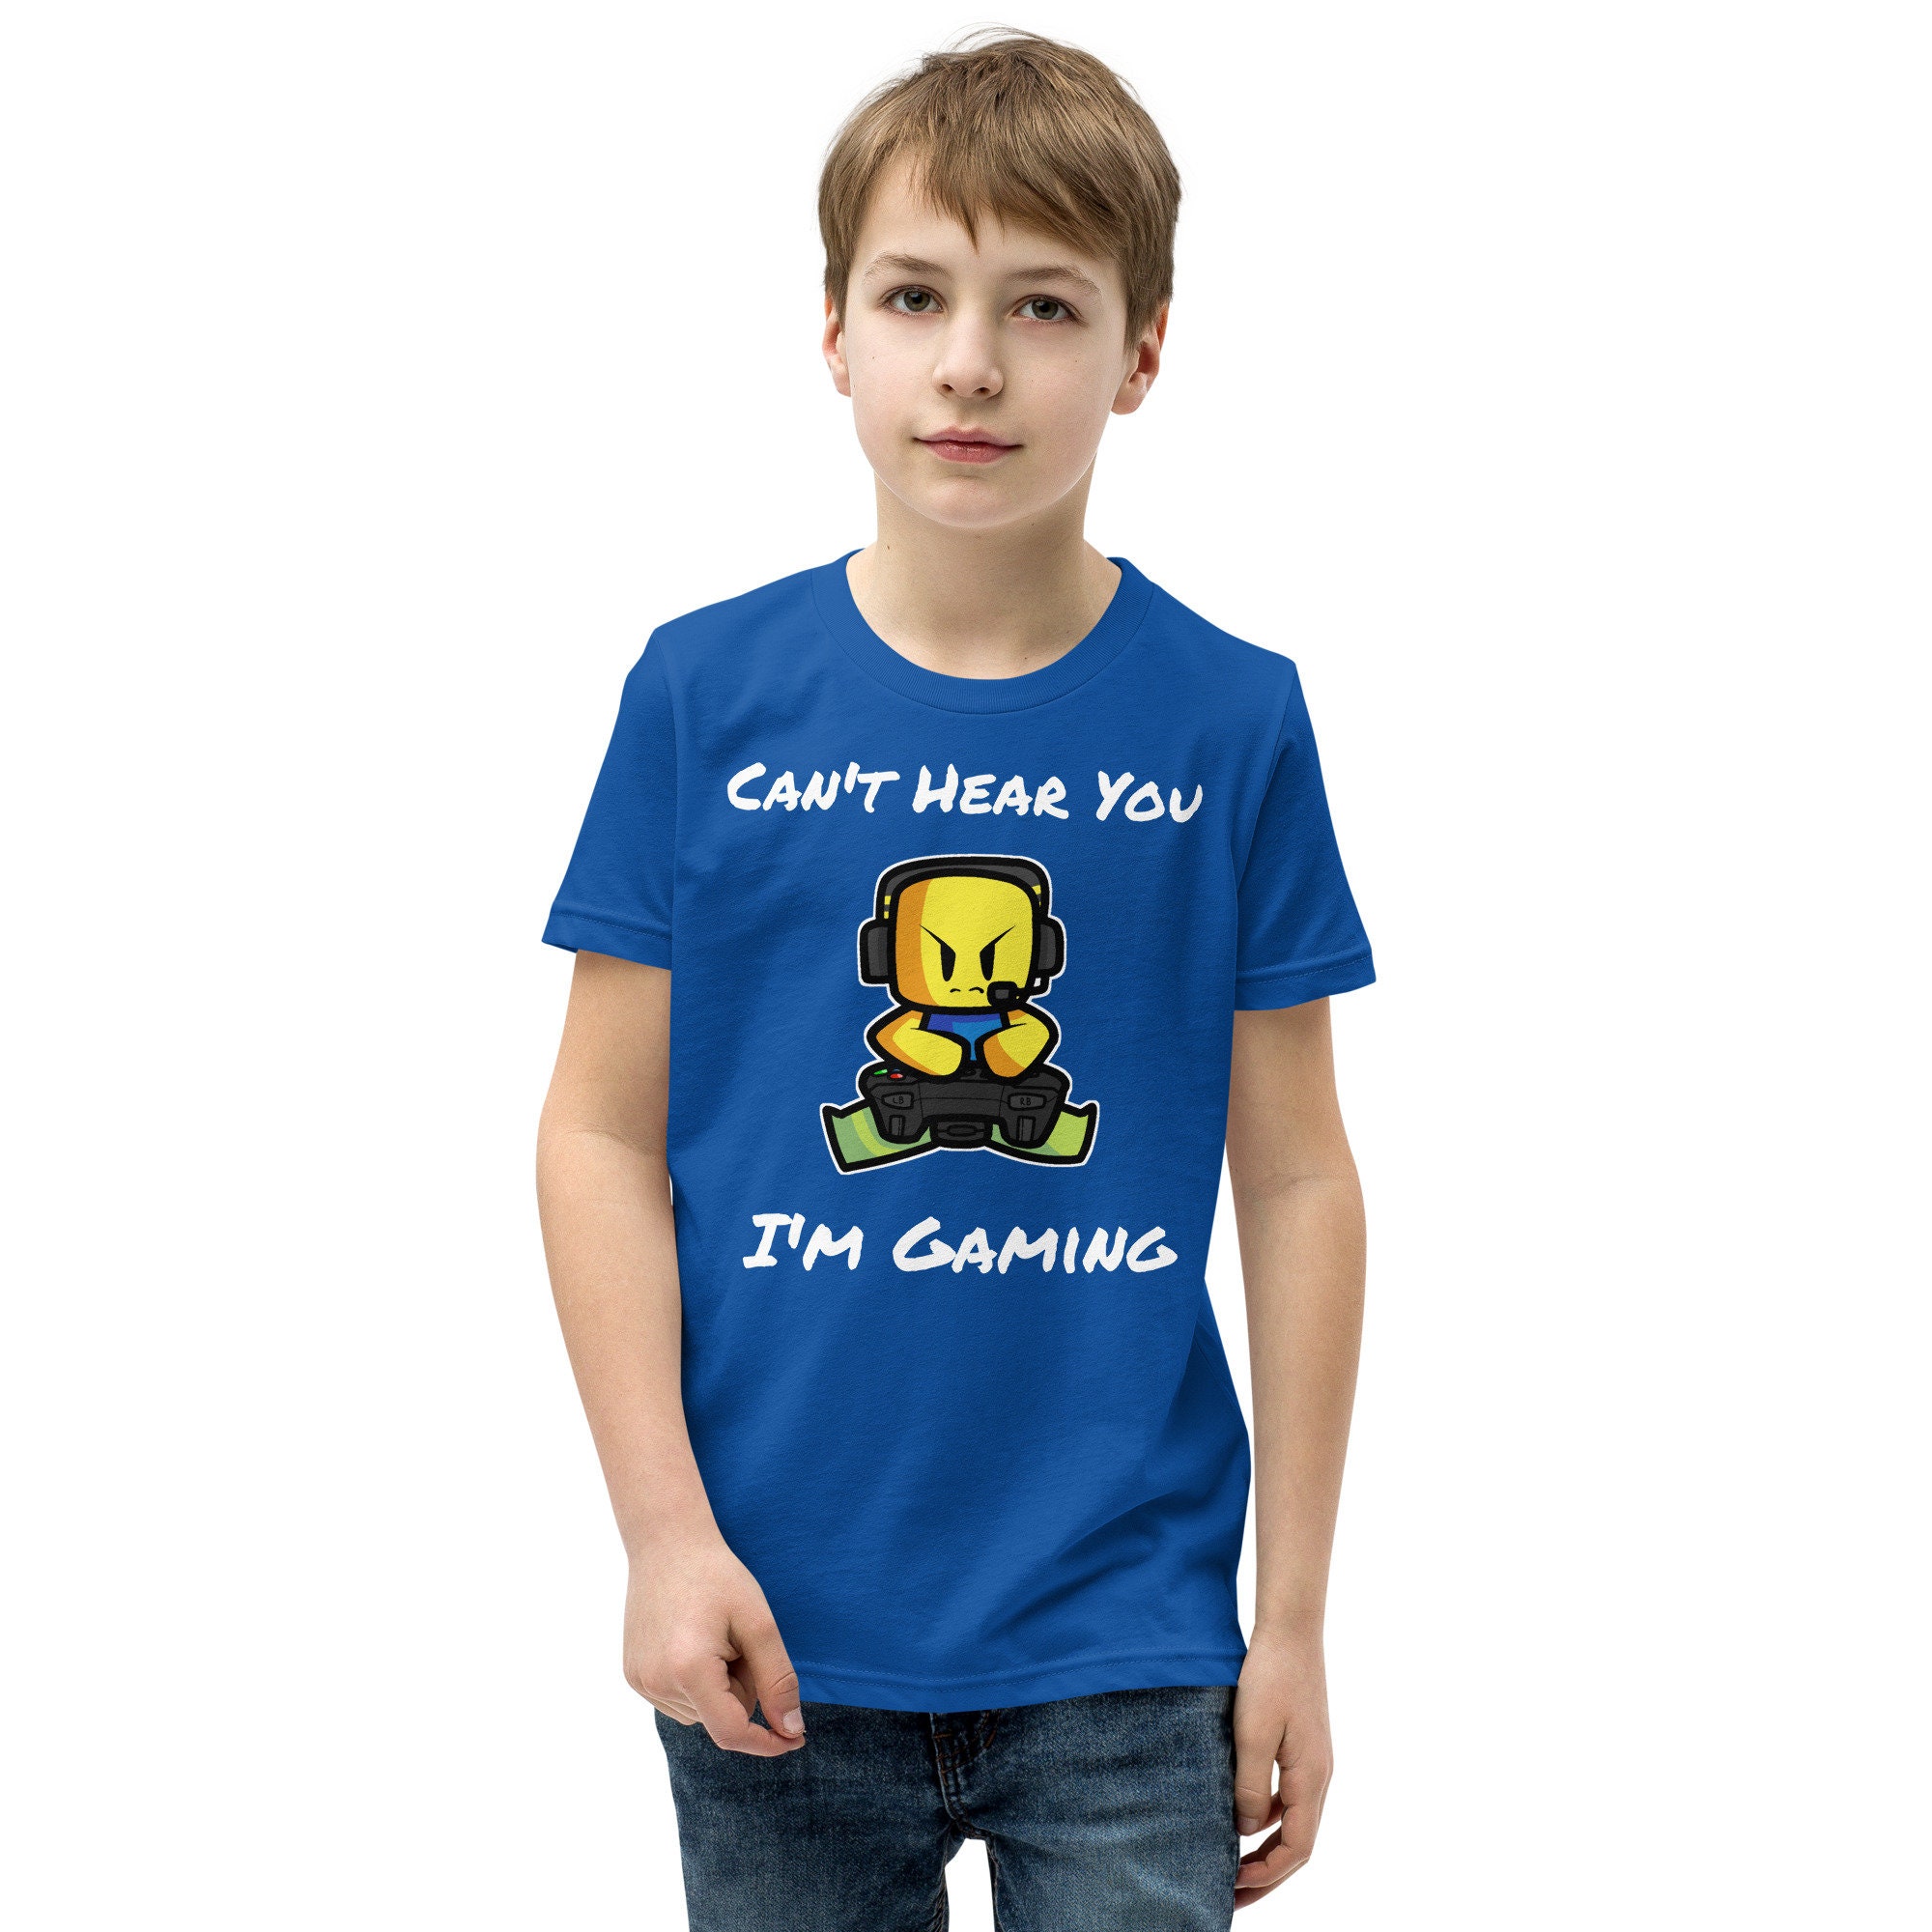 Roblox Gaming Printed Tshirt for Kids